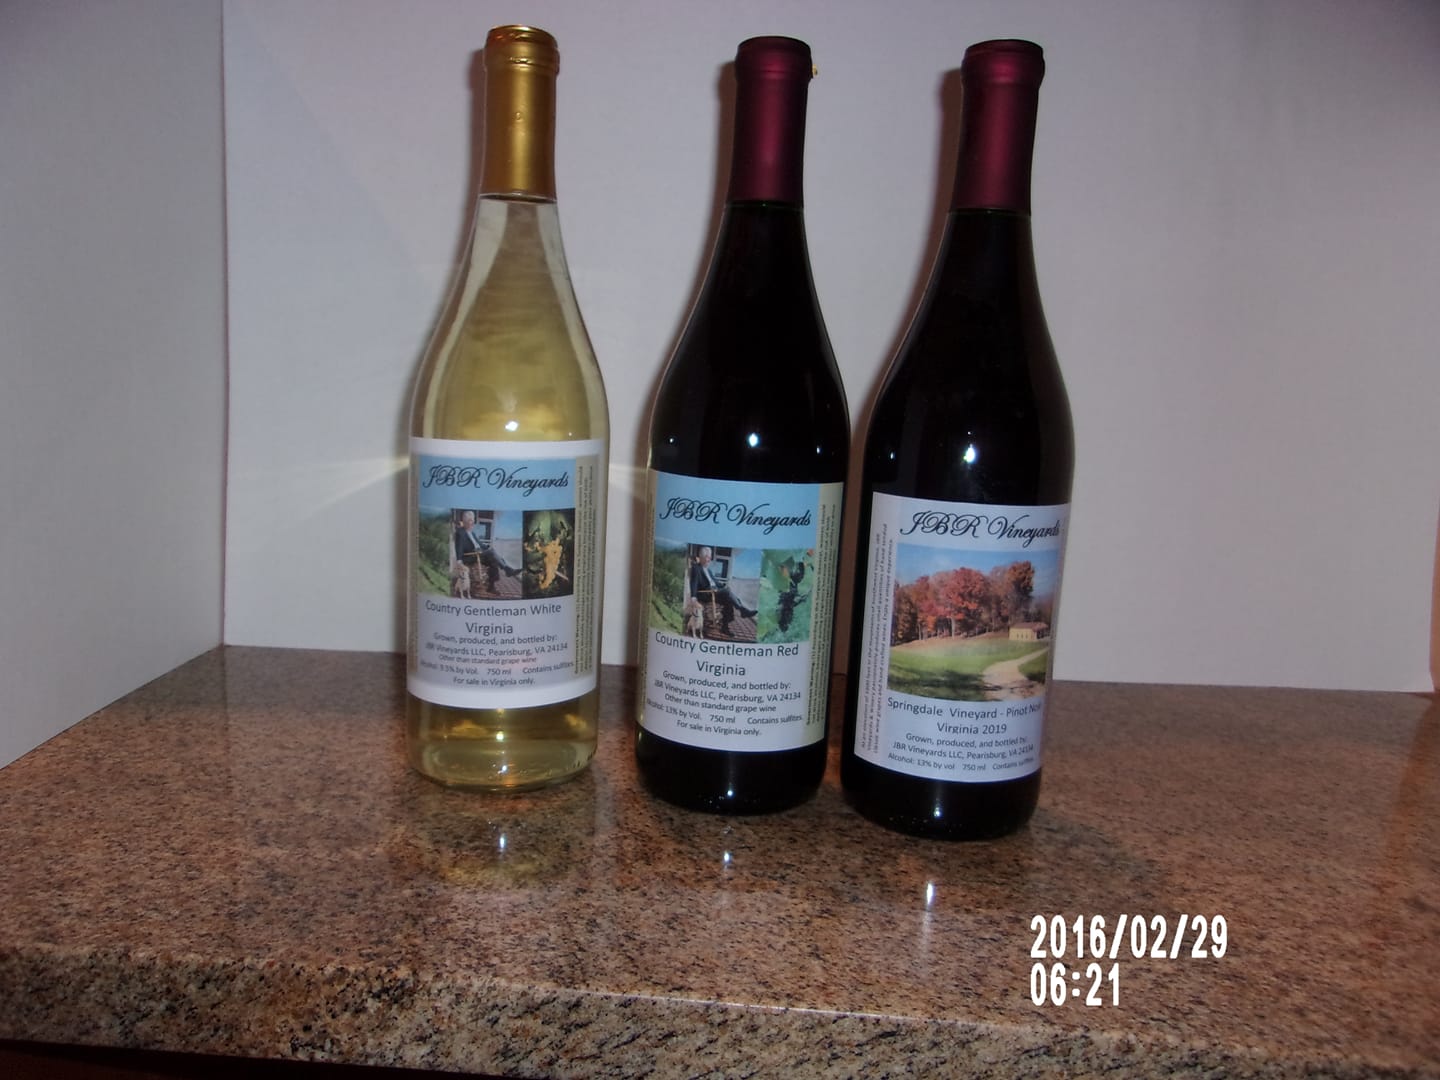 JBR Vineyards & Winery